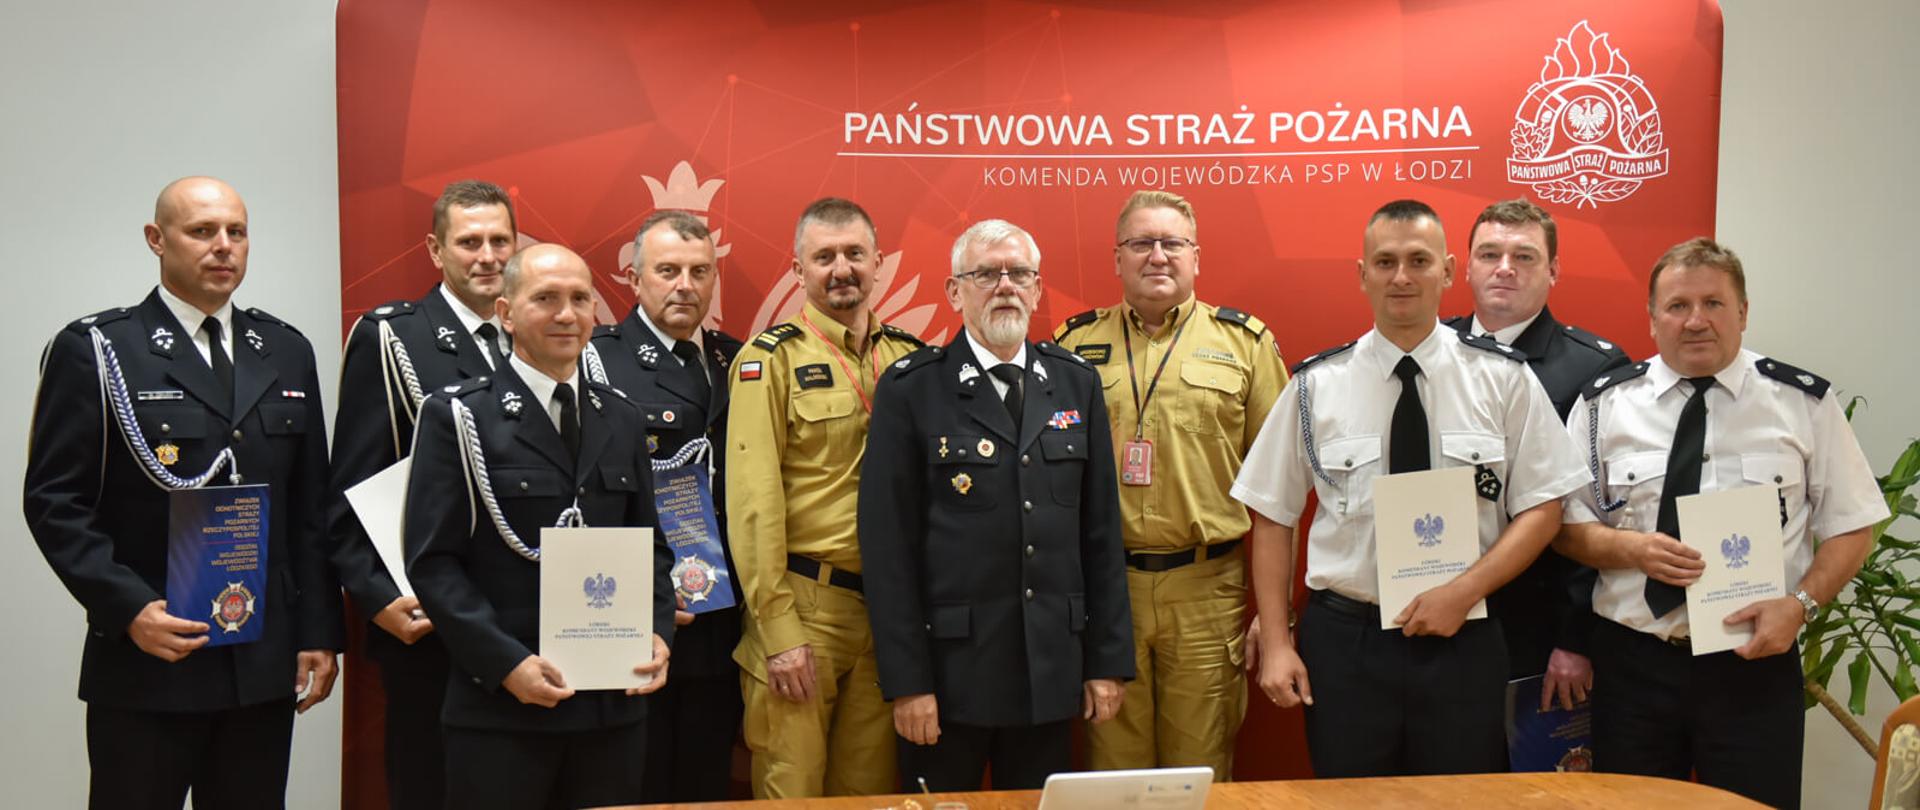 ośmiu druhów i dwóch strażaków pozują do zdjęcia na tle banneru komendy wojewódzkiej PSP w Łodzi